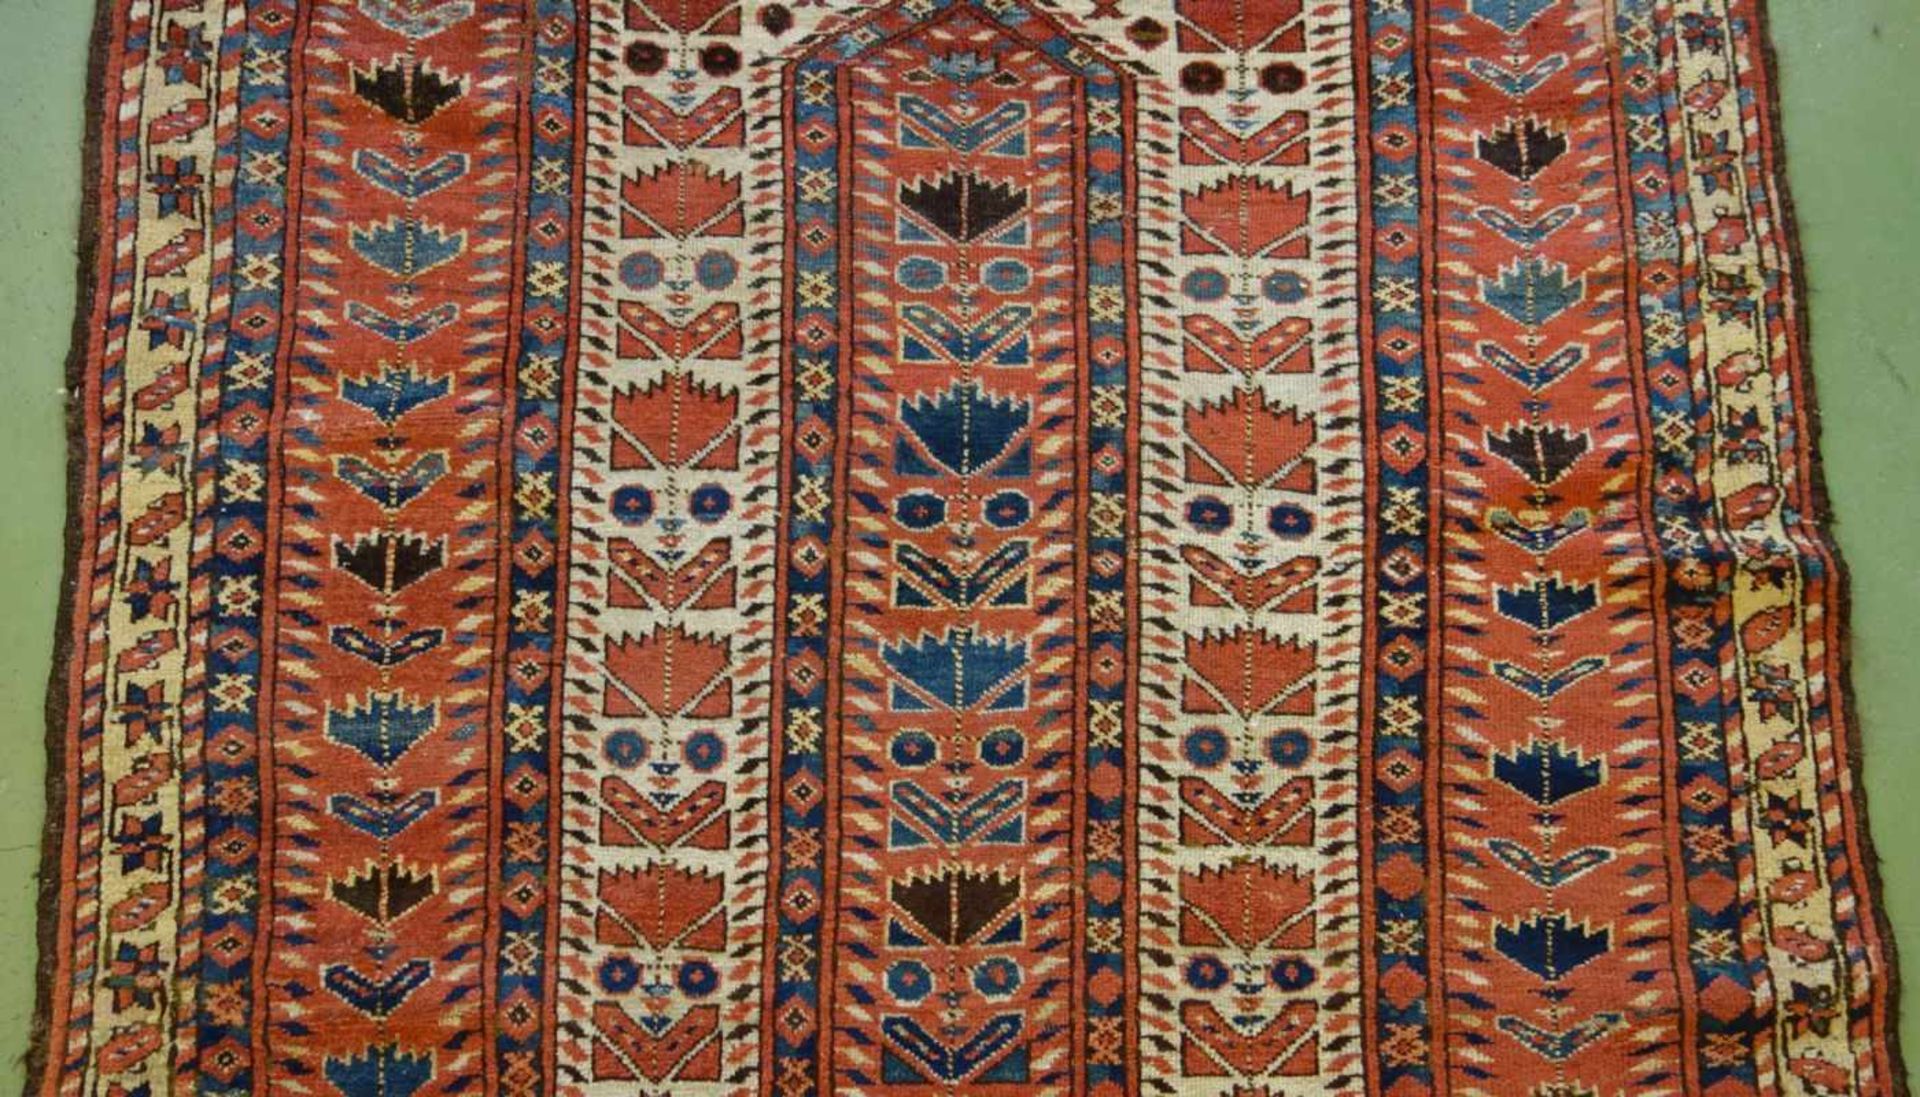 SCHMALER BESCHIR GEBETSTEPPICH / prayer rug, wohl 2. H. 19. Jh., Turkmenistan / Ersari-Beschir ( - Image 23 of 24